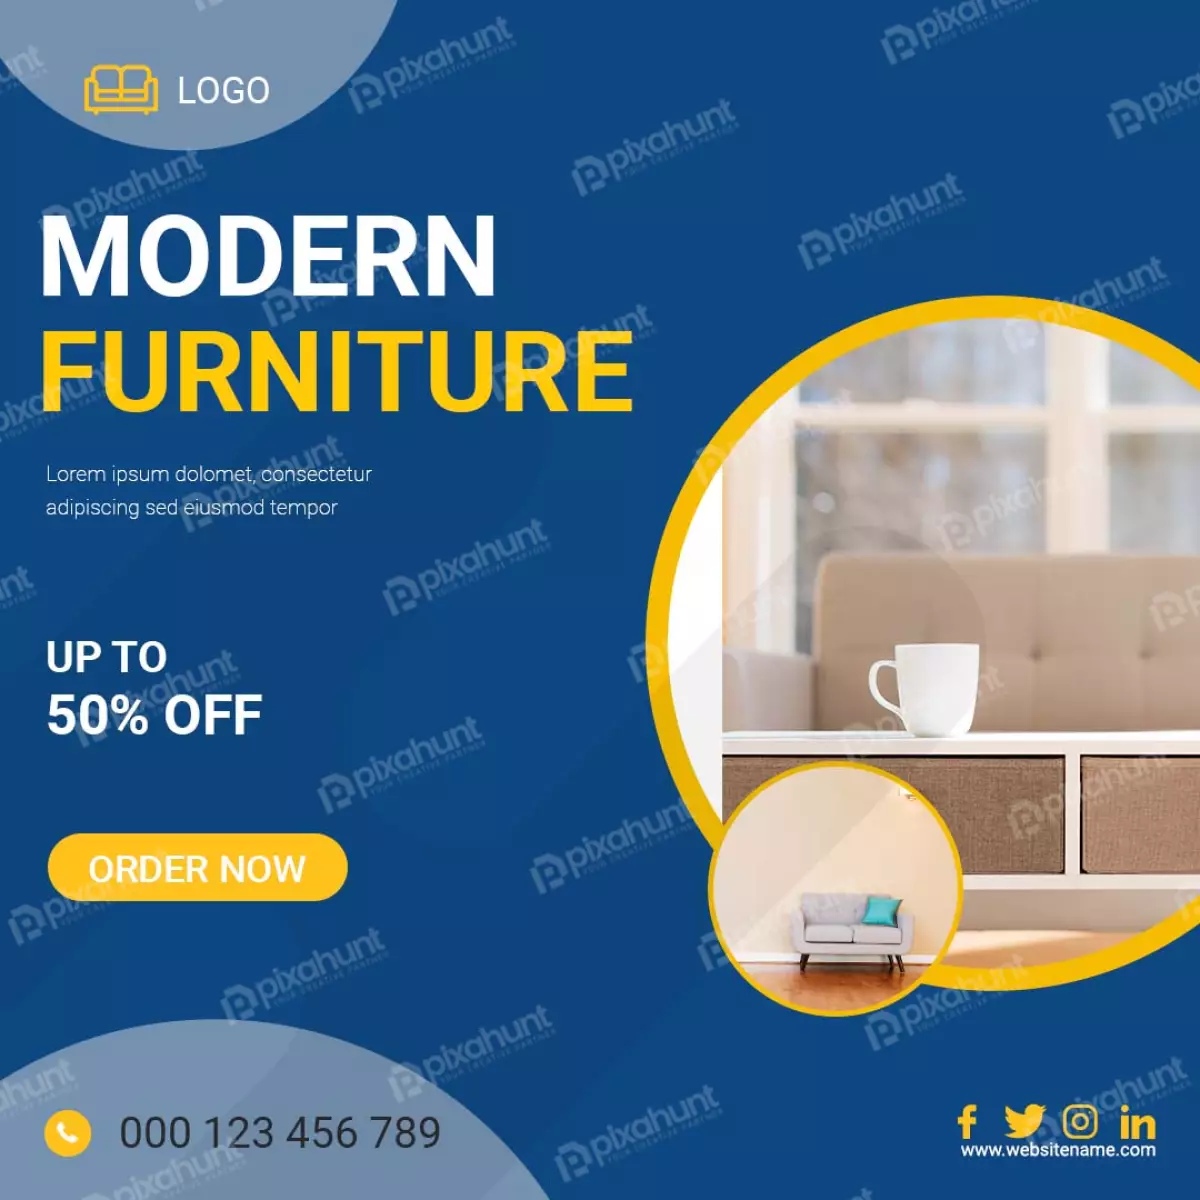 Furniture for sale social media post design